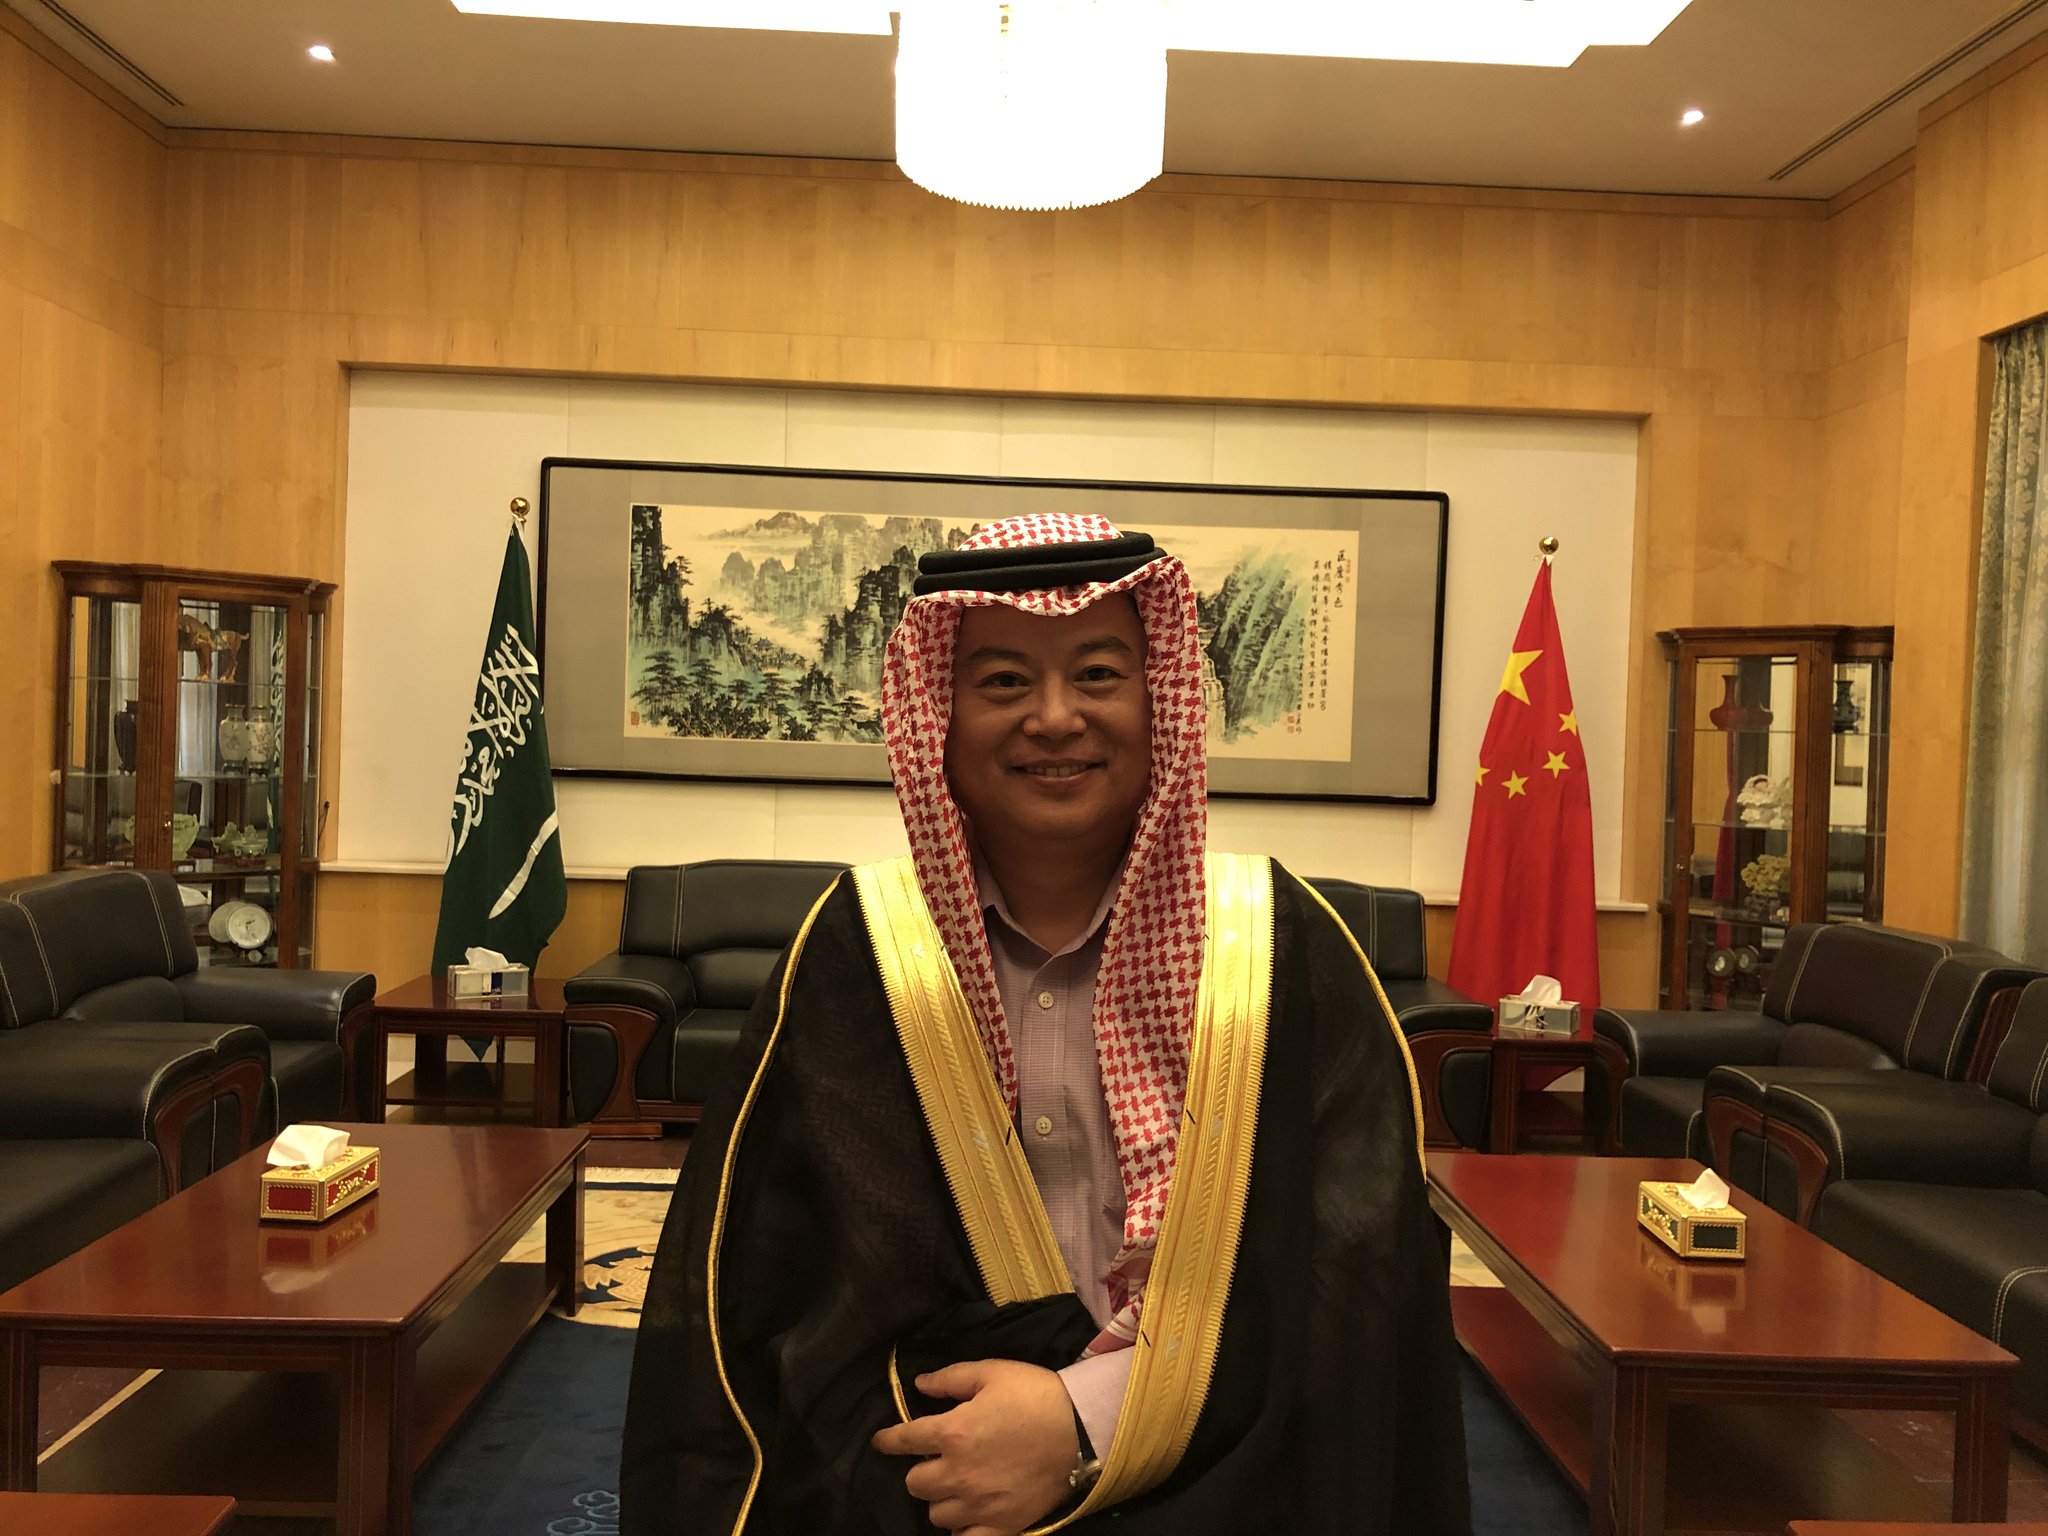 السفير الصيني بالزي السعودي: جالس أتعلم لبس البشت